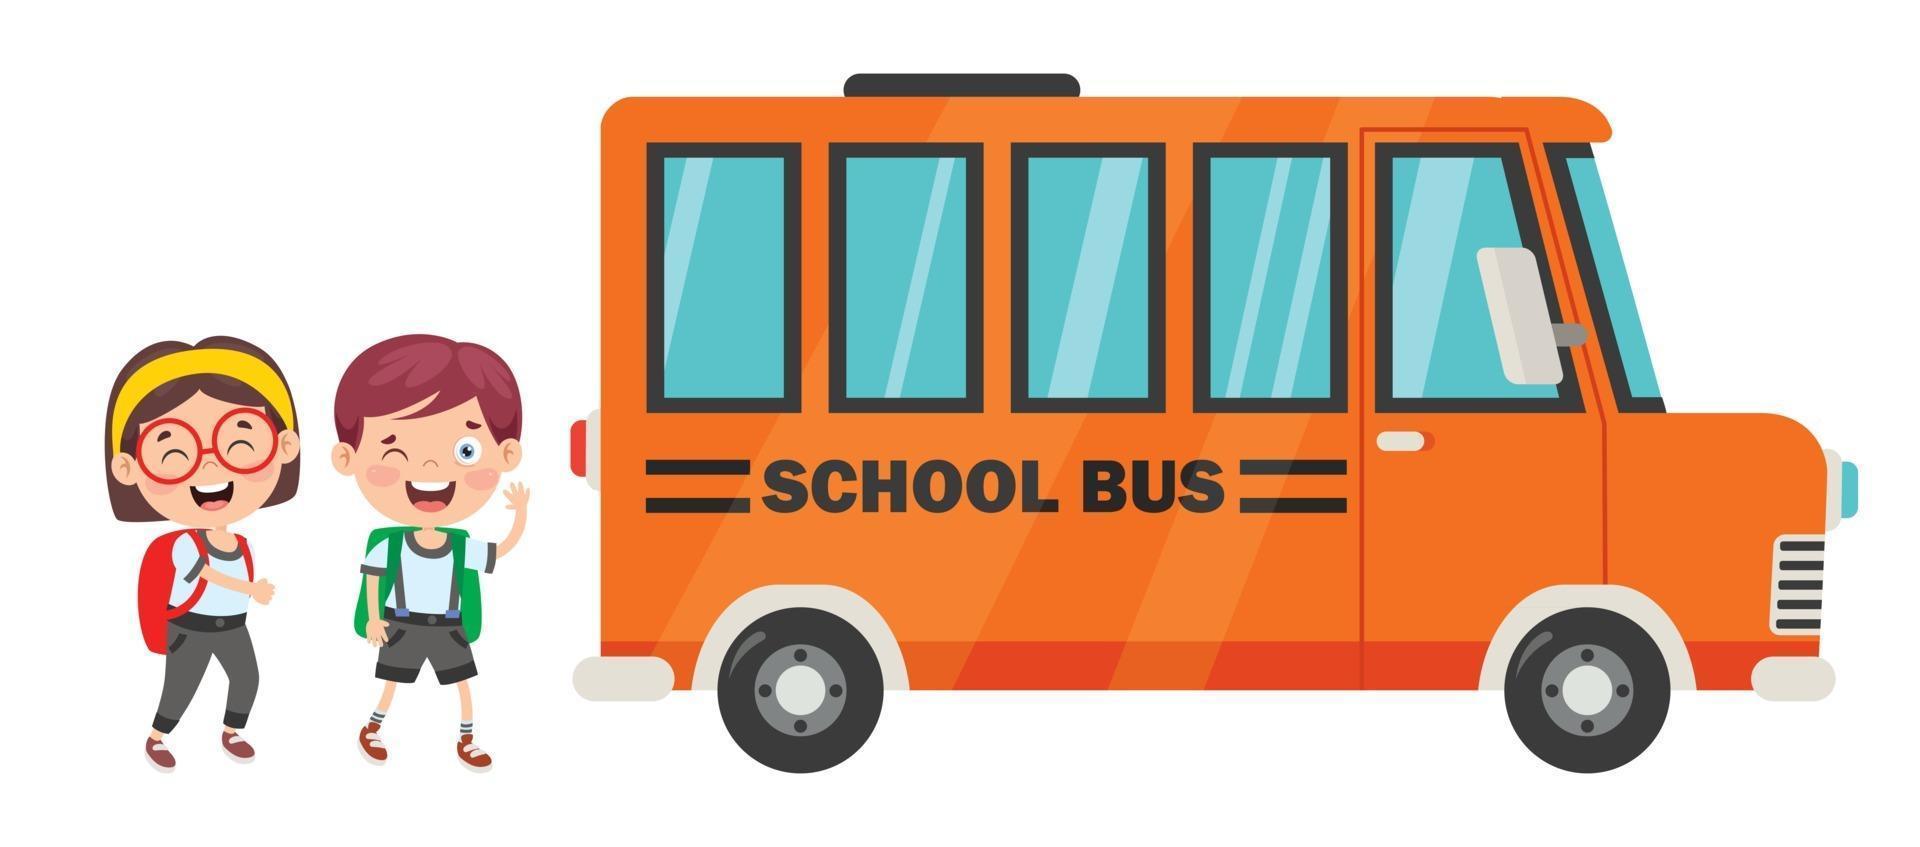 enfants heureux et autobus scolaire vecteur